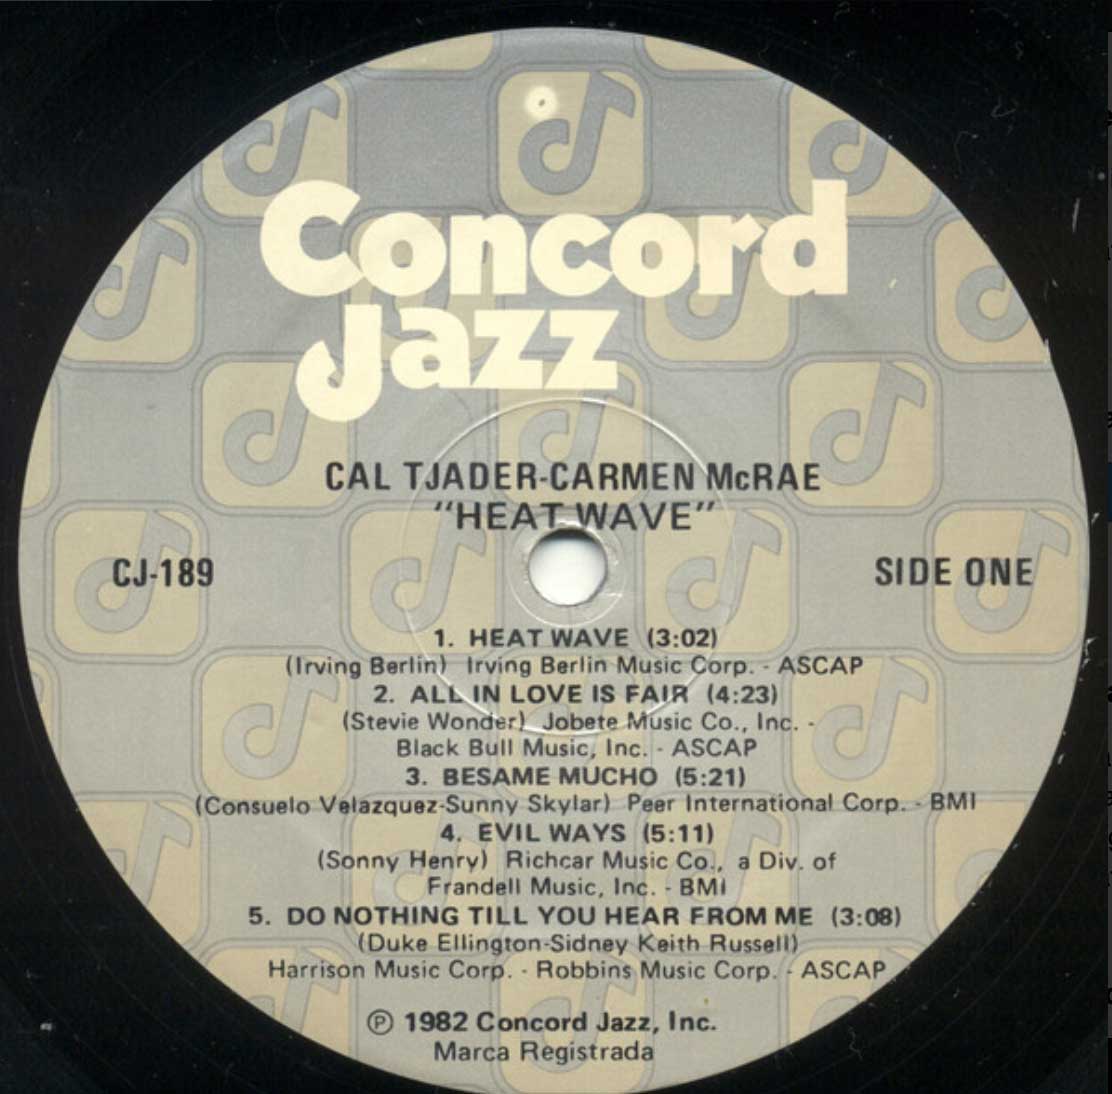 Cal Tjader - Carmen McRae - Heat Wave - 1982